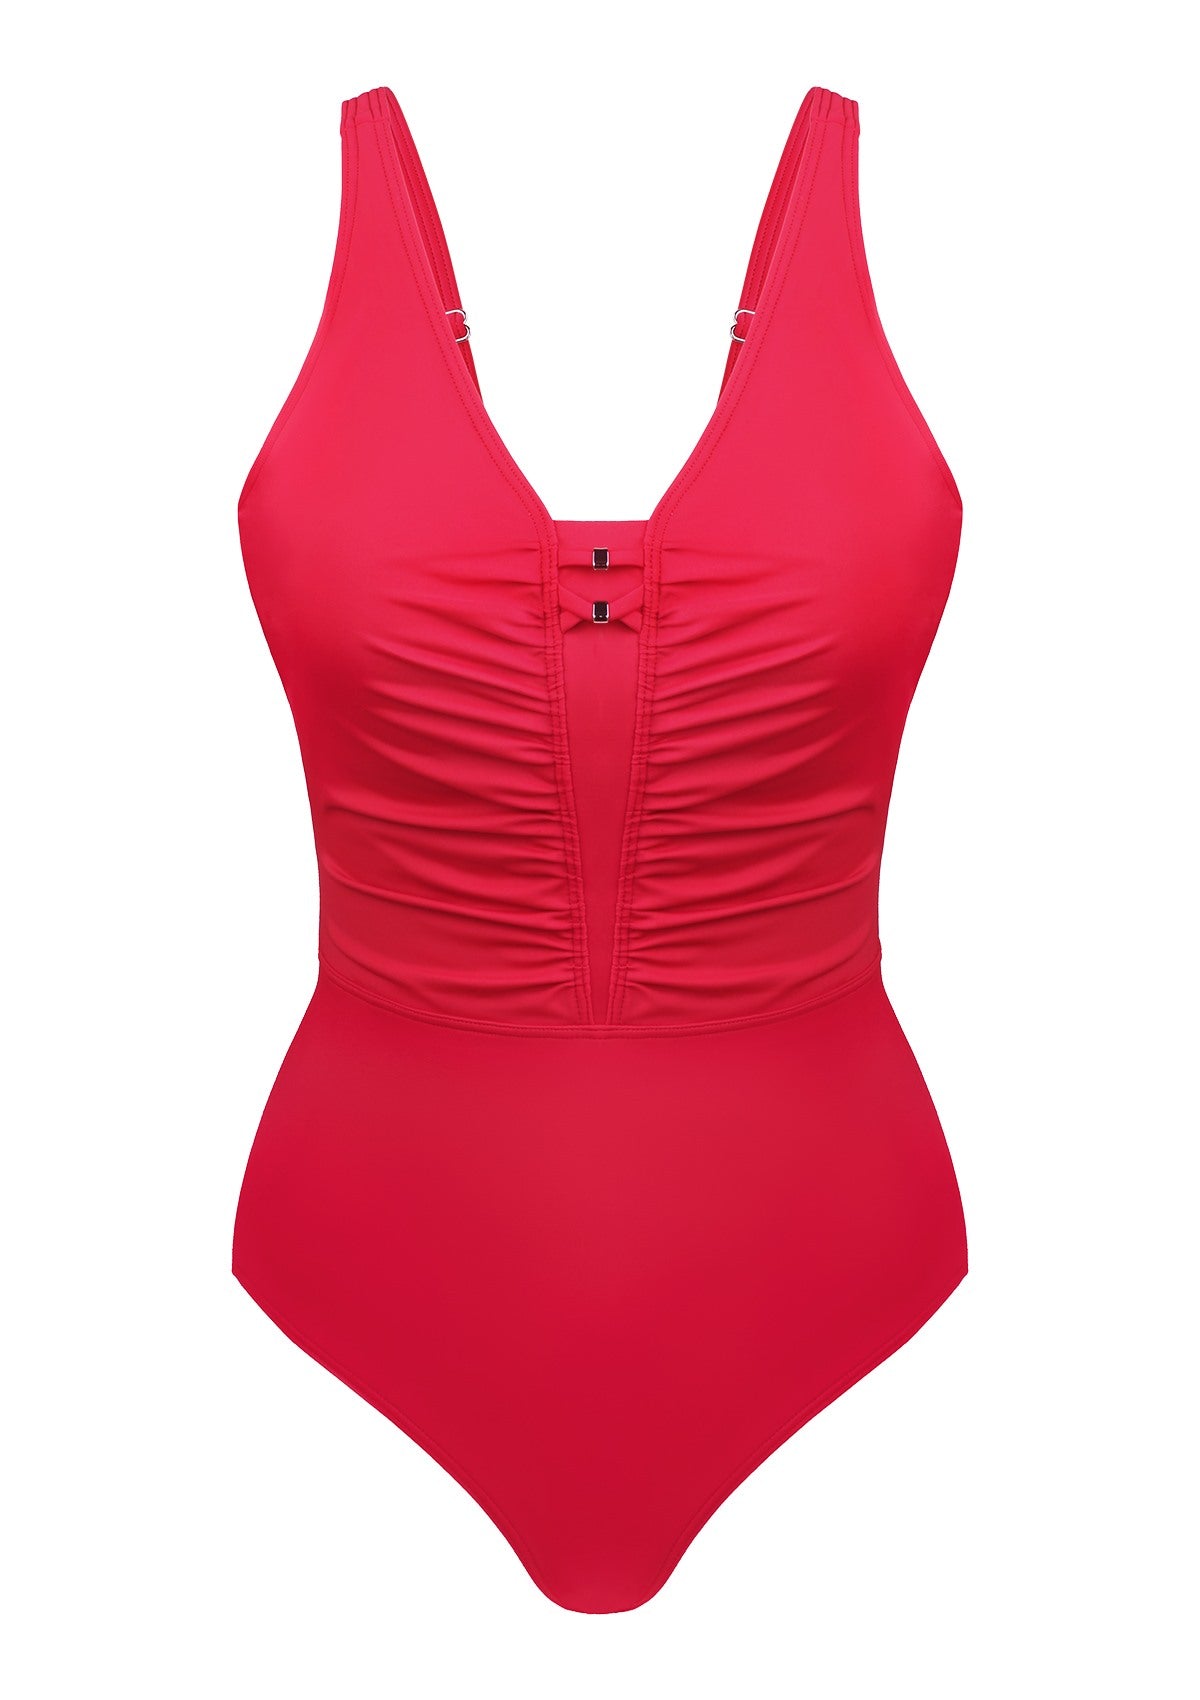 V-Neck Shirred One-Piece Swimwear - Aqua Breeze / 4XL